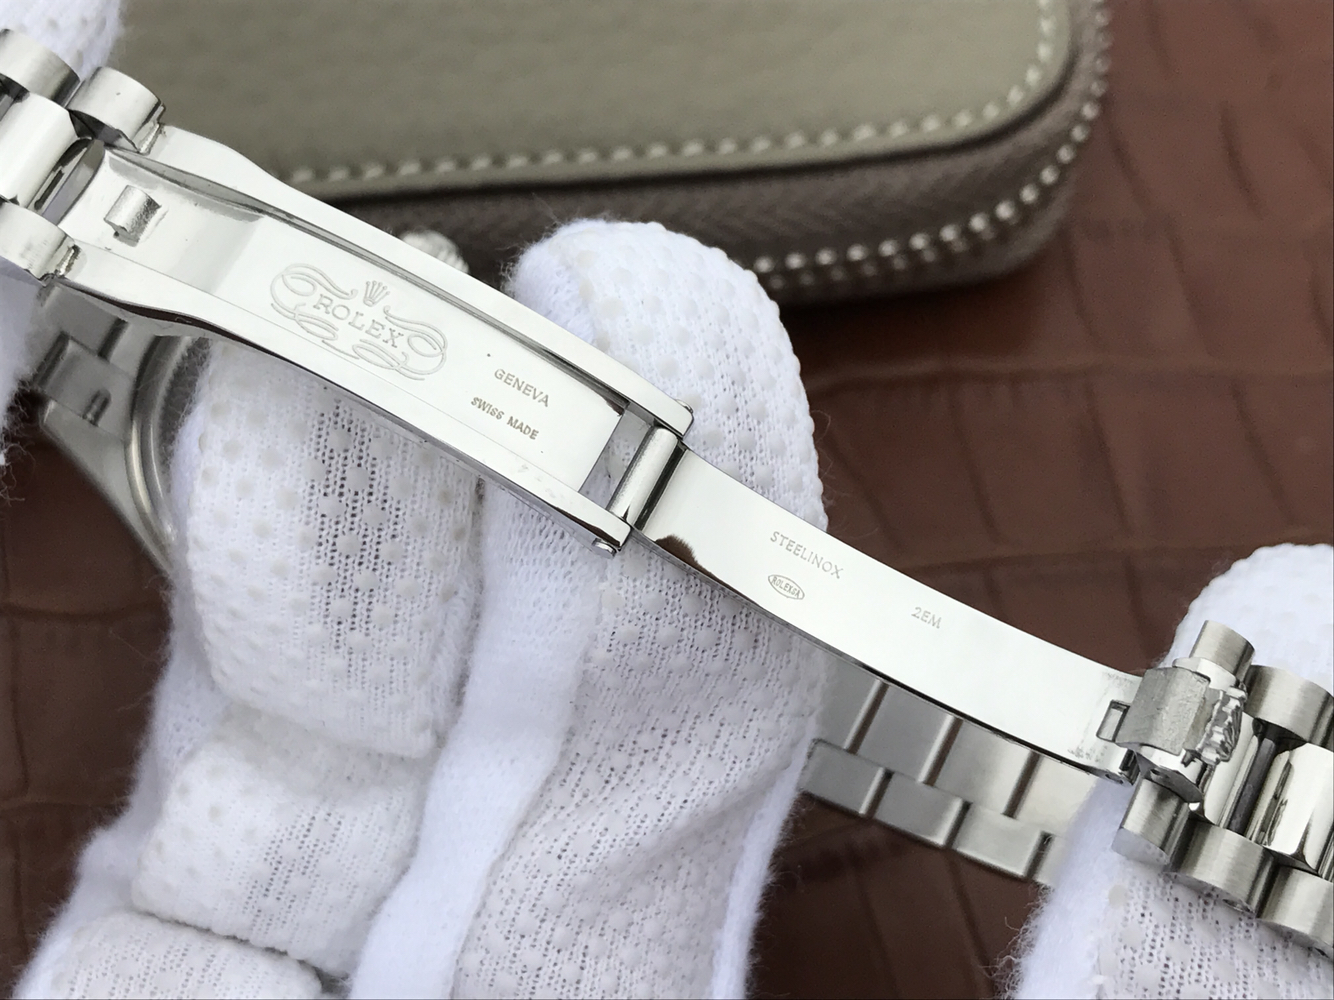 2023050901361097 - 正品刻模勞力士日誌型女錶一比一高仿手錶 28毫米A貨手錶￥3380